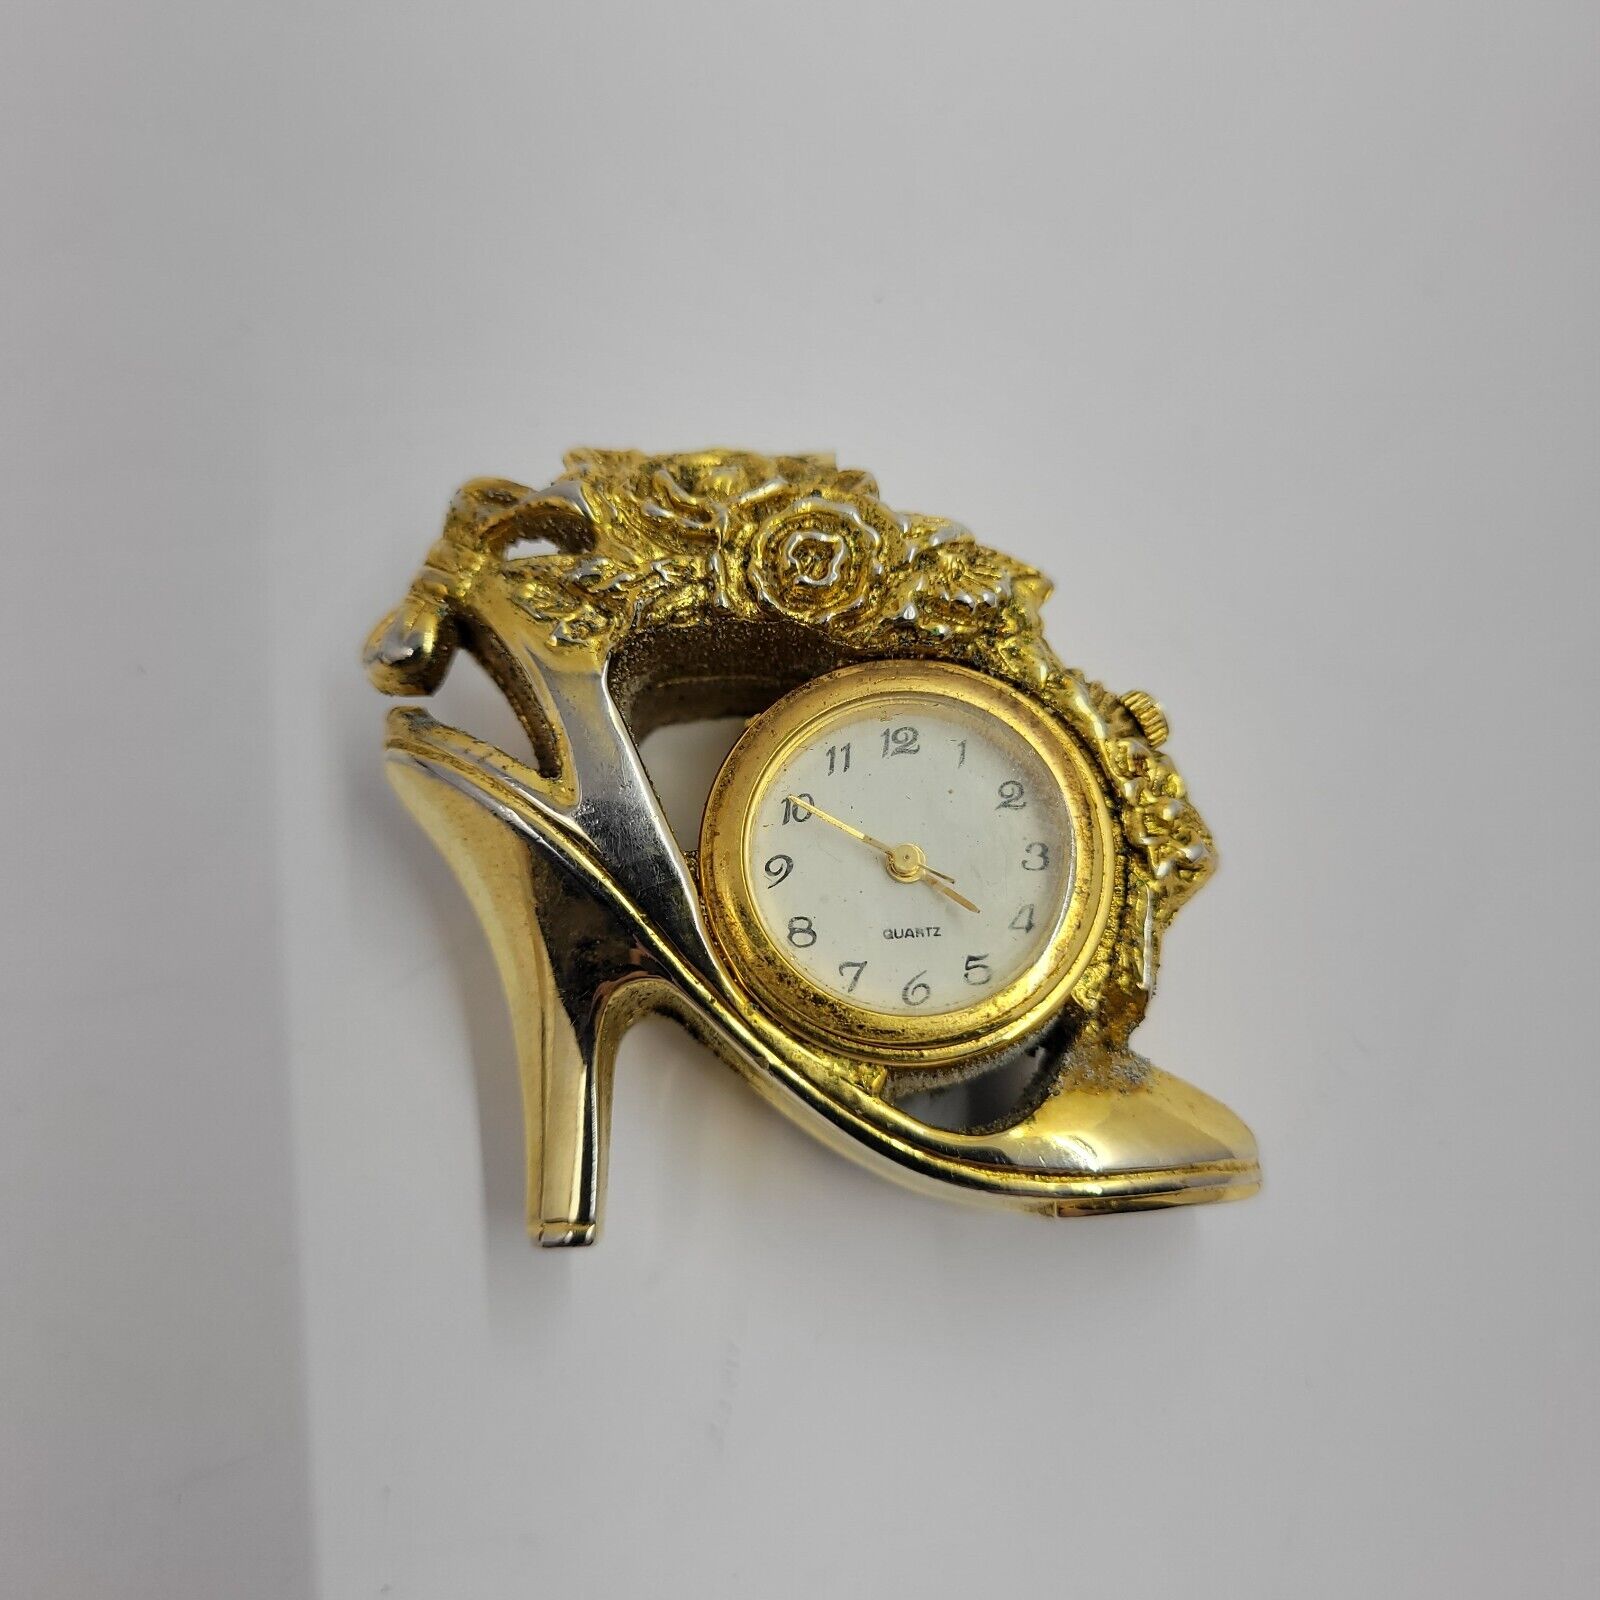 Vintage Miniature Gold Design Shoe Quartz Desk Clock (not working) Collectible